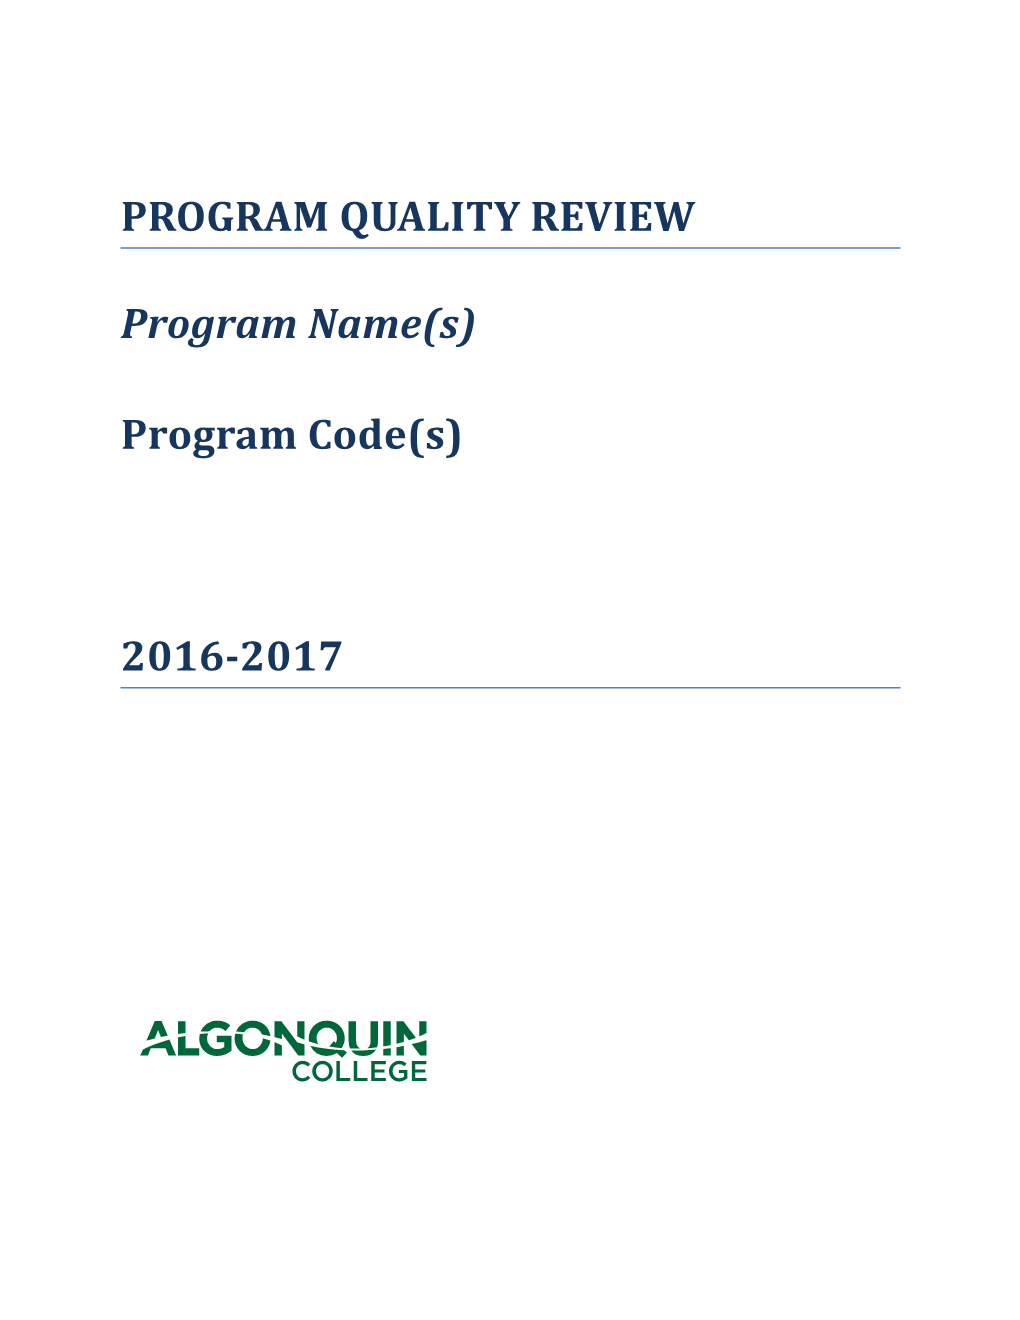 Program Quality Review